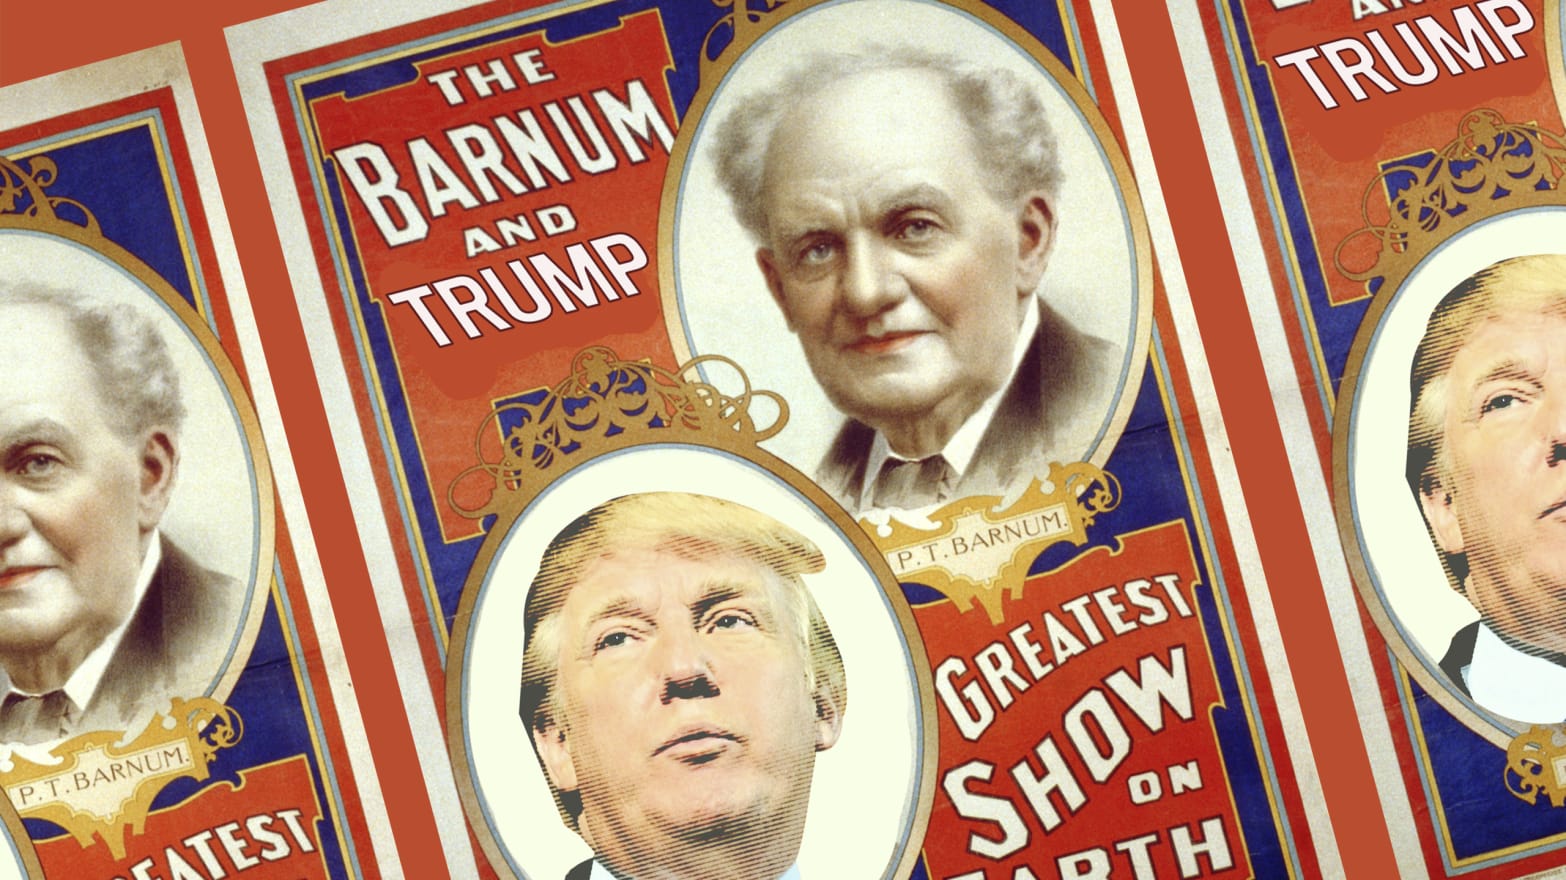 P.T. Barnum Biography